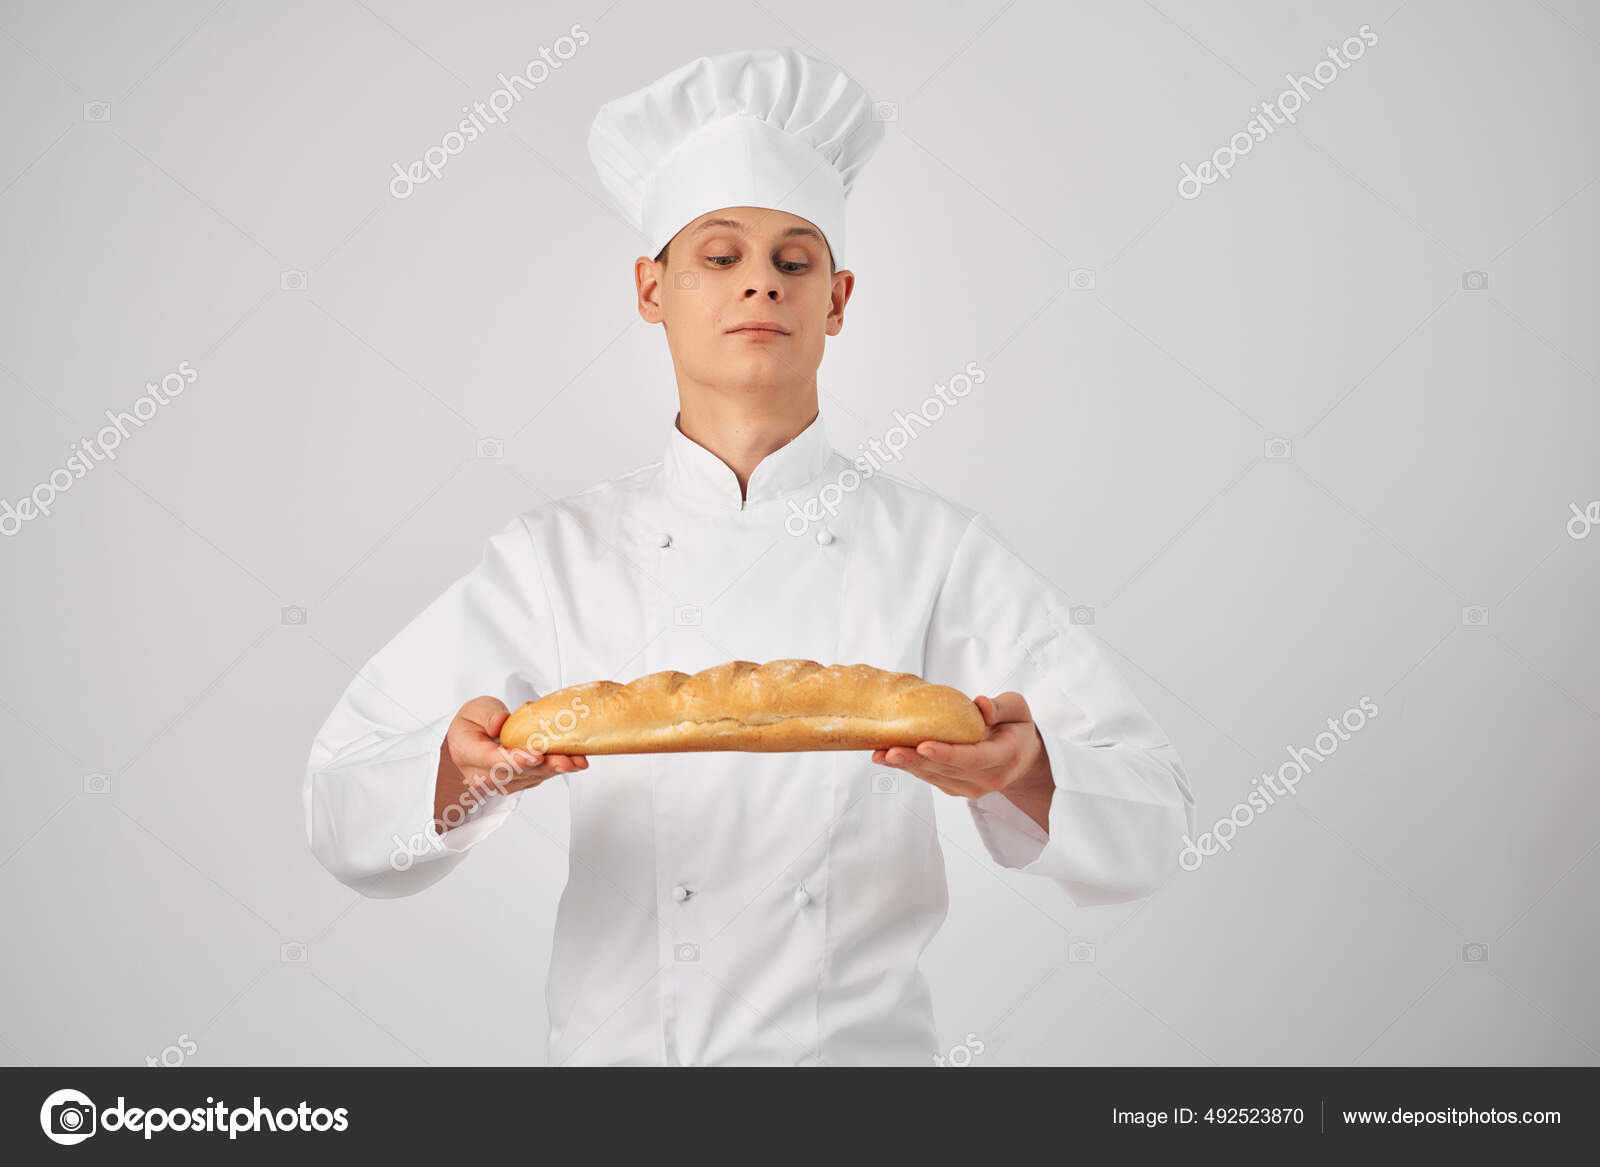 En mand i kokke tøj en brød bager Professionel — Stock-foto © ShotStudio #492523870